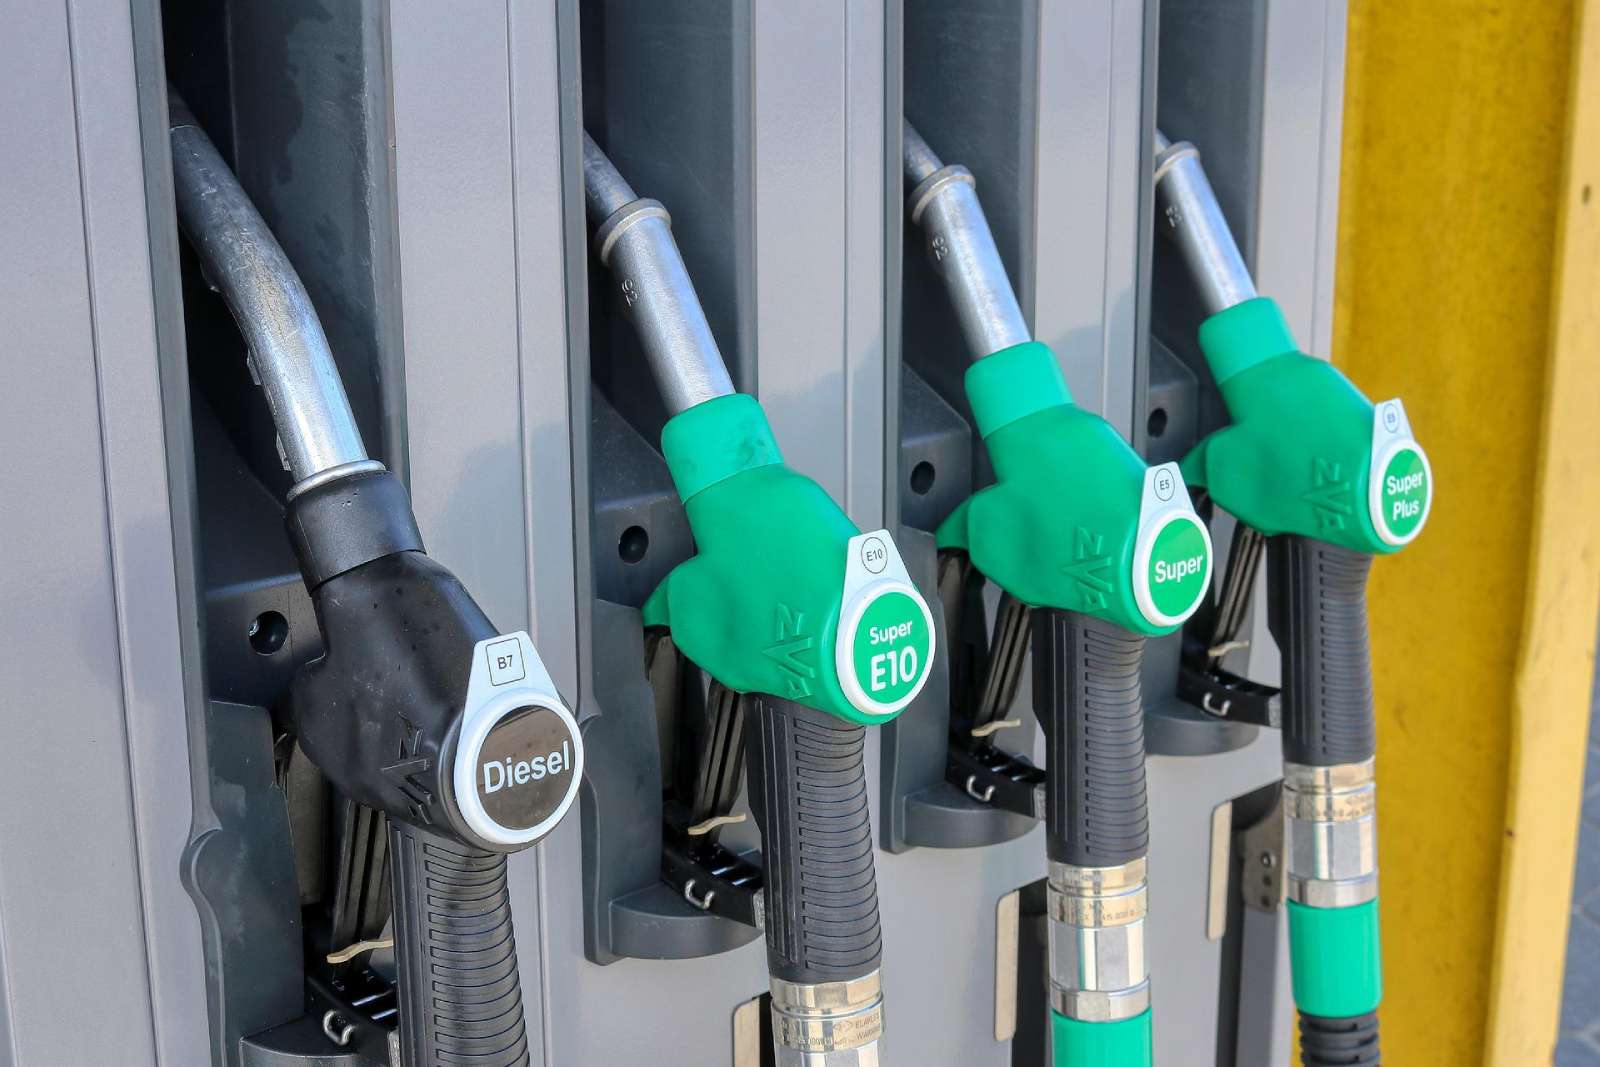 La gasolina y los combustibles en general han registrado un avance importante en los precios